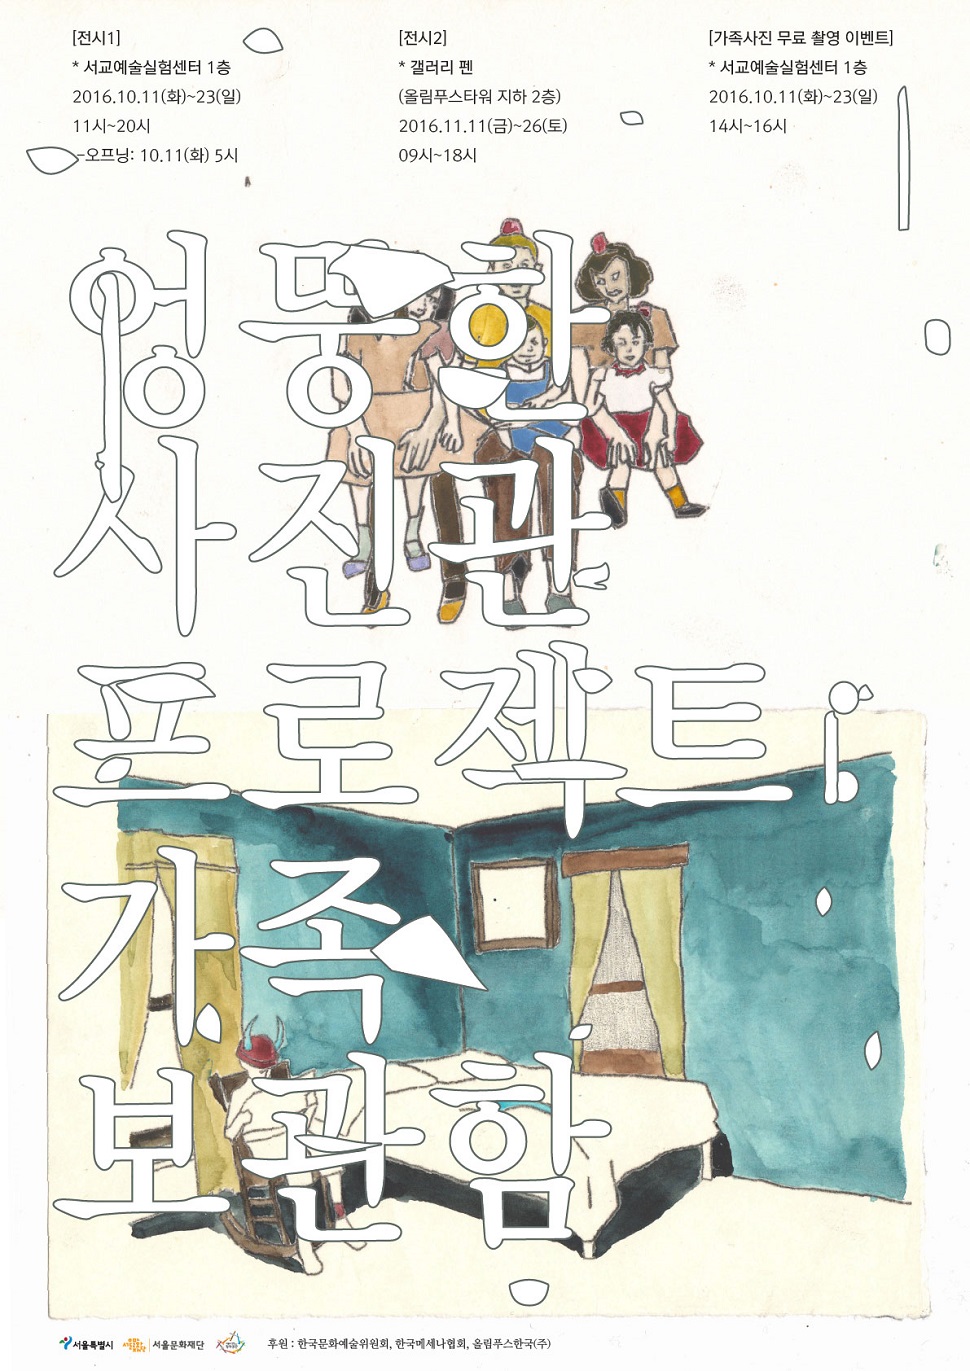 엉뚱한 사진관 프로젝트 전시 포스터 (사진제공: 서울문화재단)